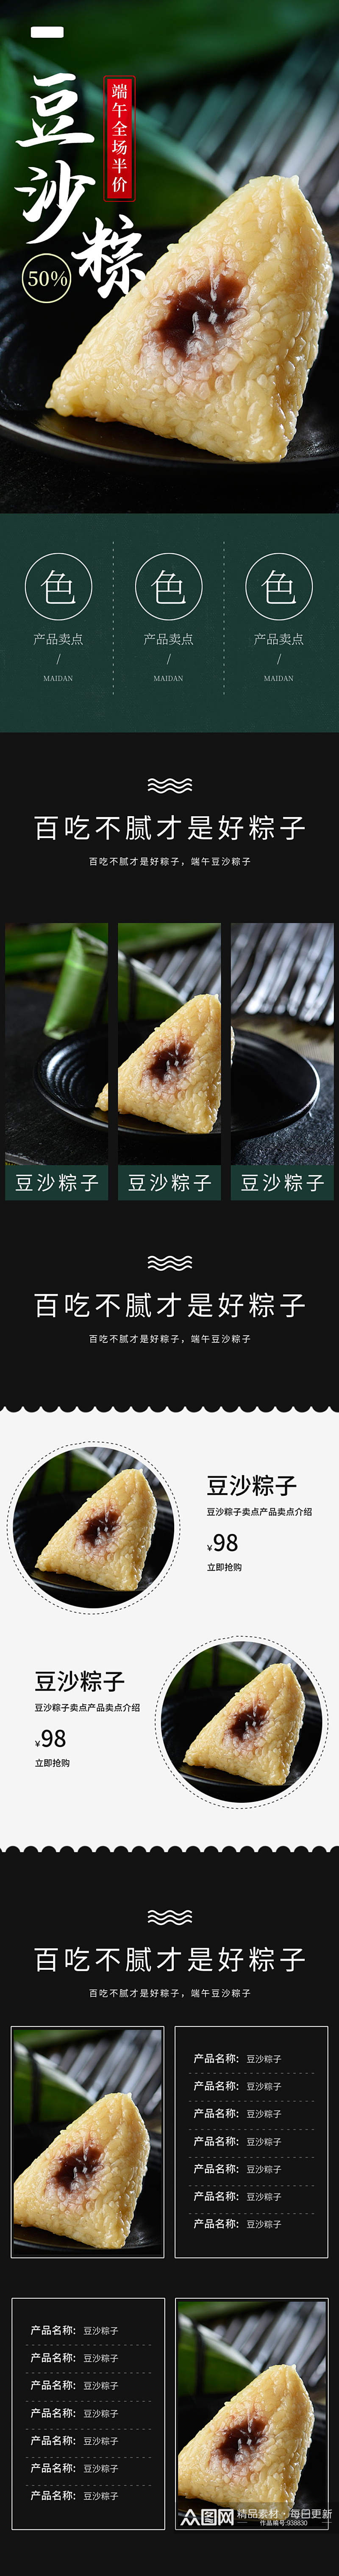 豆沙甜粽子端午节中国风详情页模板素材